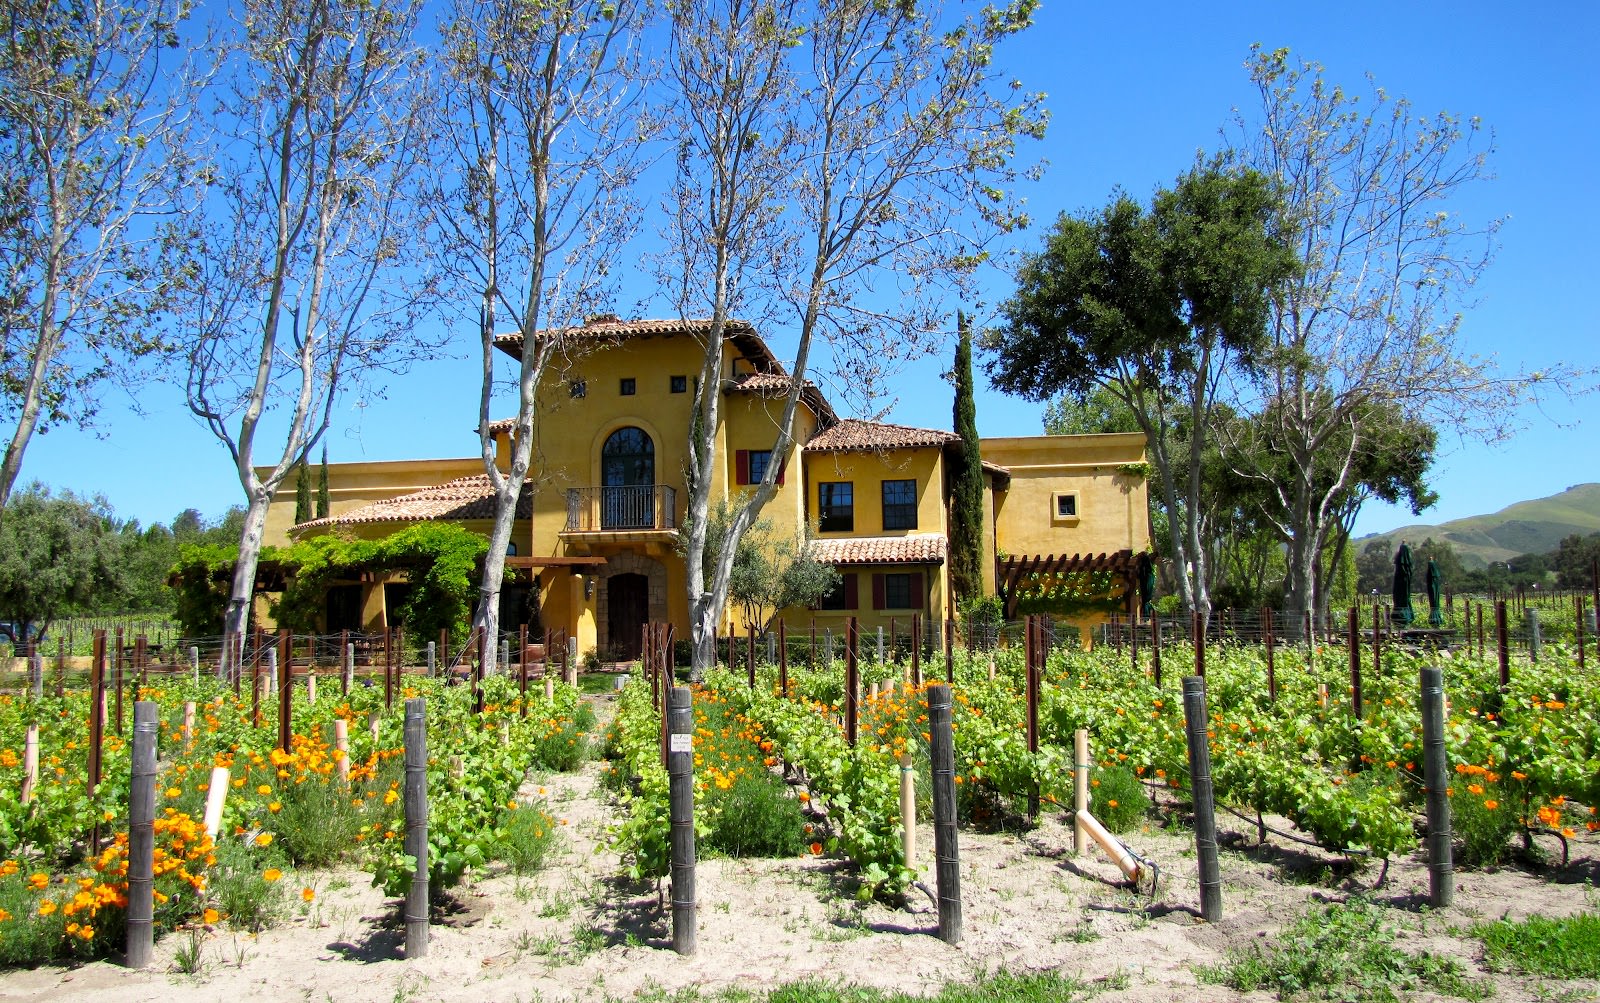 Santa Barbara Vineyards in California